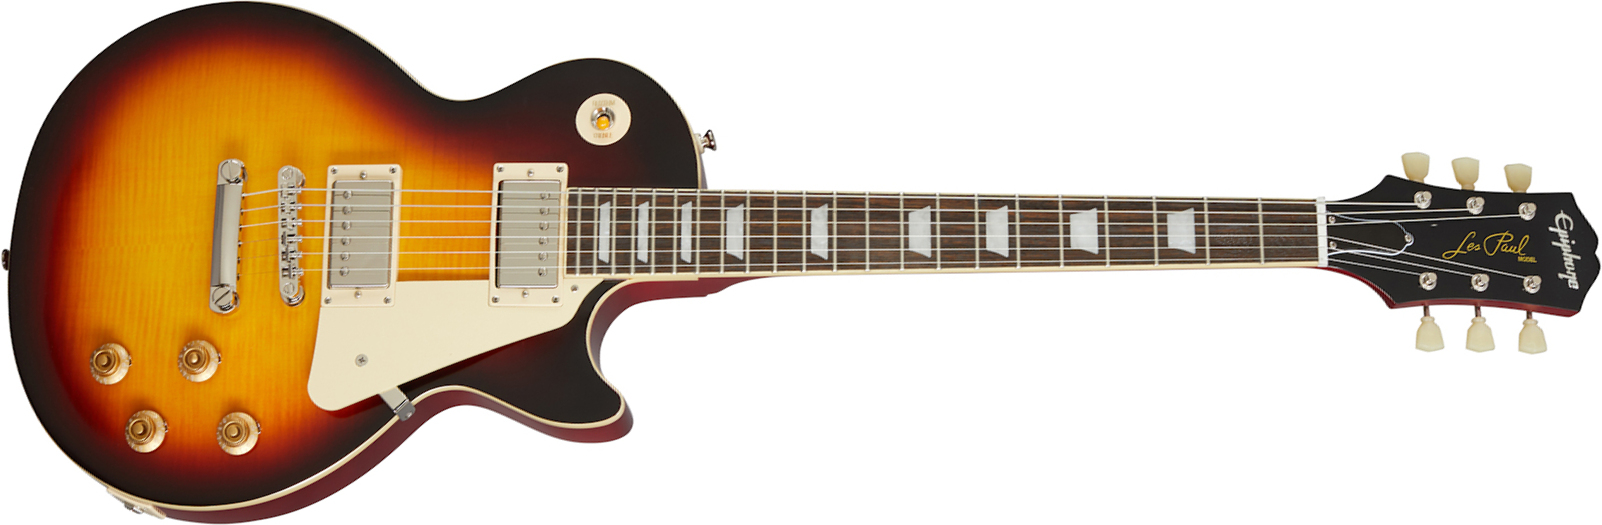 Epiphone Les Paul Standard 1959 Outfit 2h Ht Rw - Aged Dark Burst - Guitarra eléctrica de corte único. - Main picture